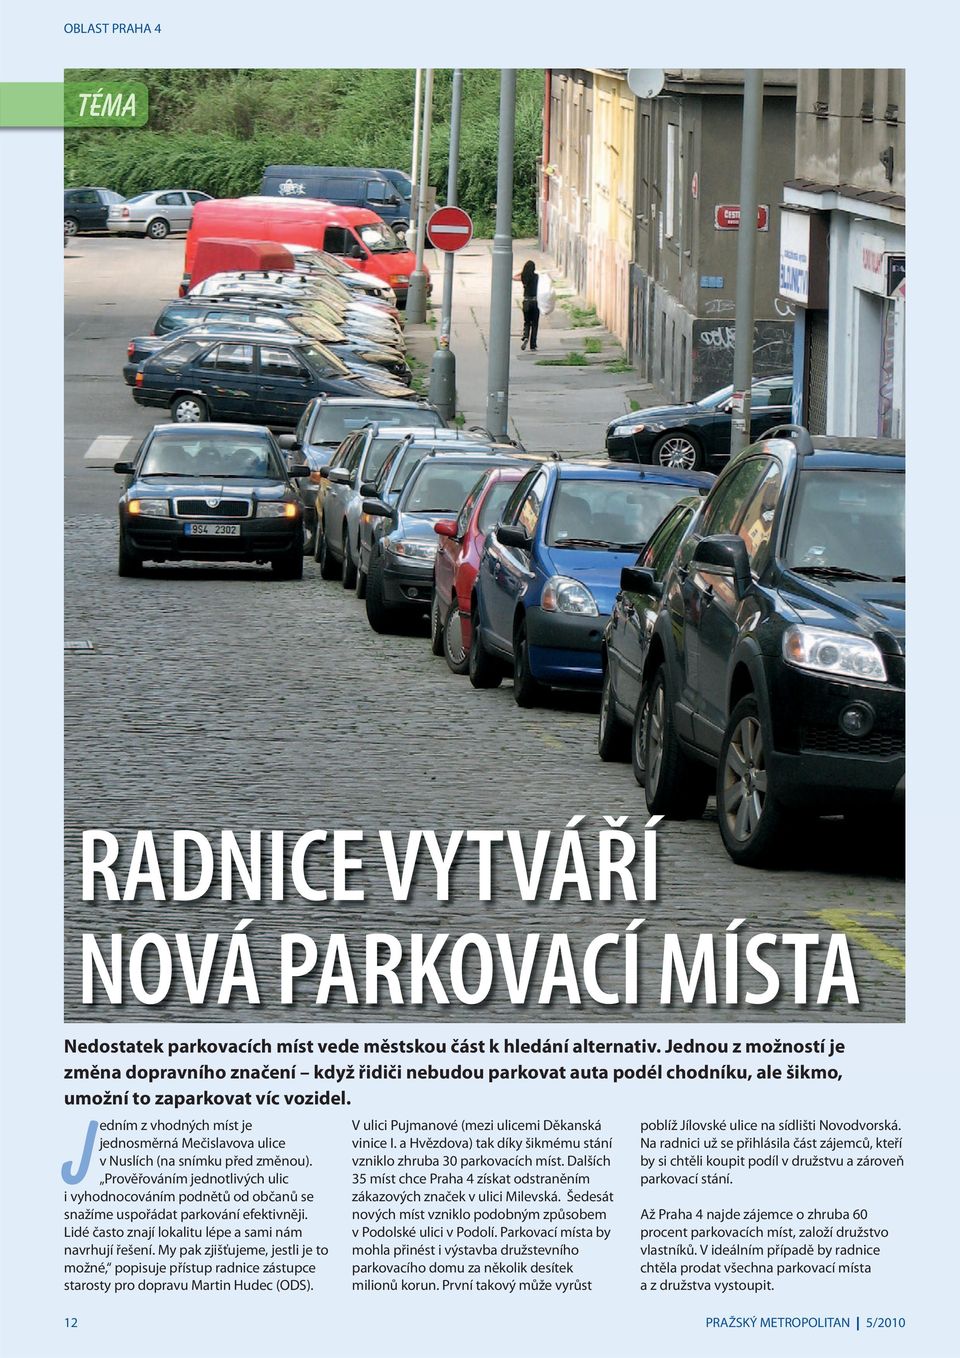 Jedním z vhodných míst je jednosměrná Mečislavova ulice v Nuslích (na snímku před změnou). Prověřováním jednotlivých ulic i vyhodnocováním podnětů od občanů se snažíme uspořádat parkování efektivněji.